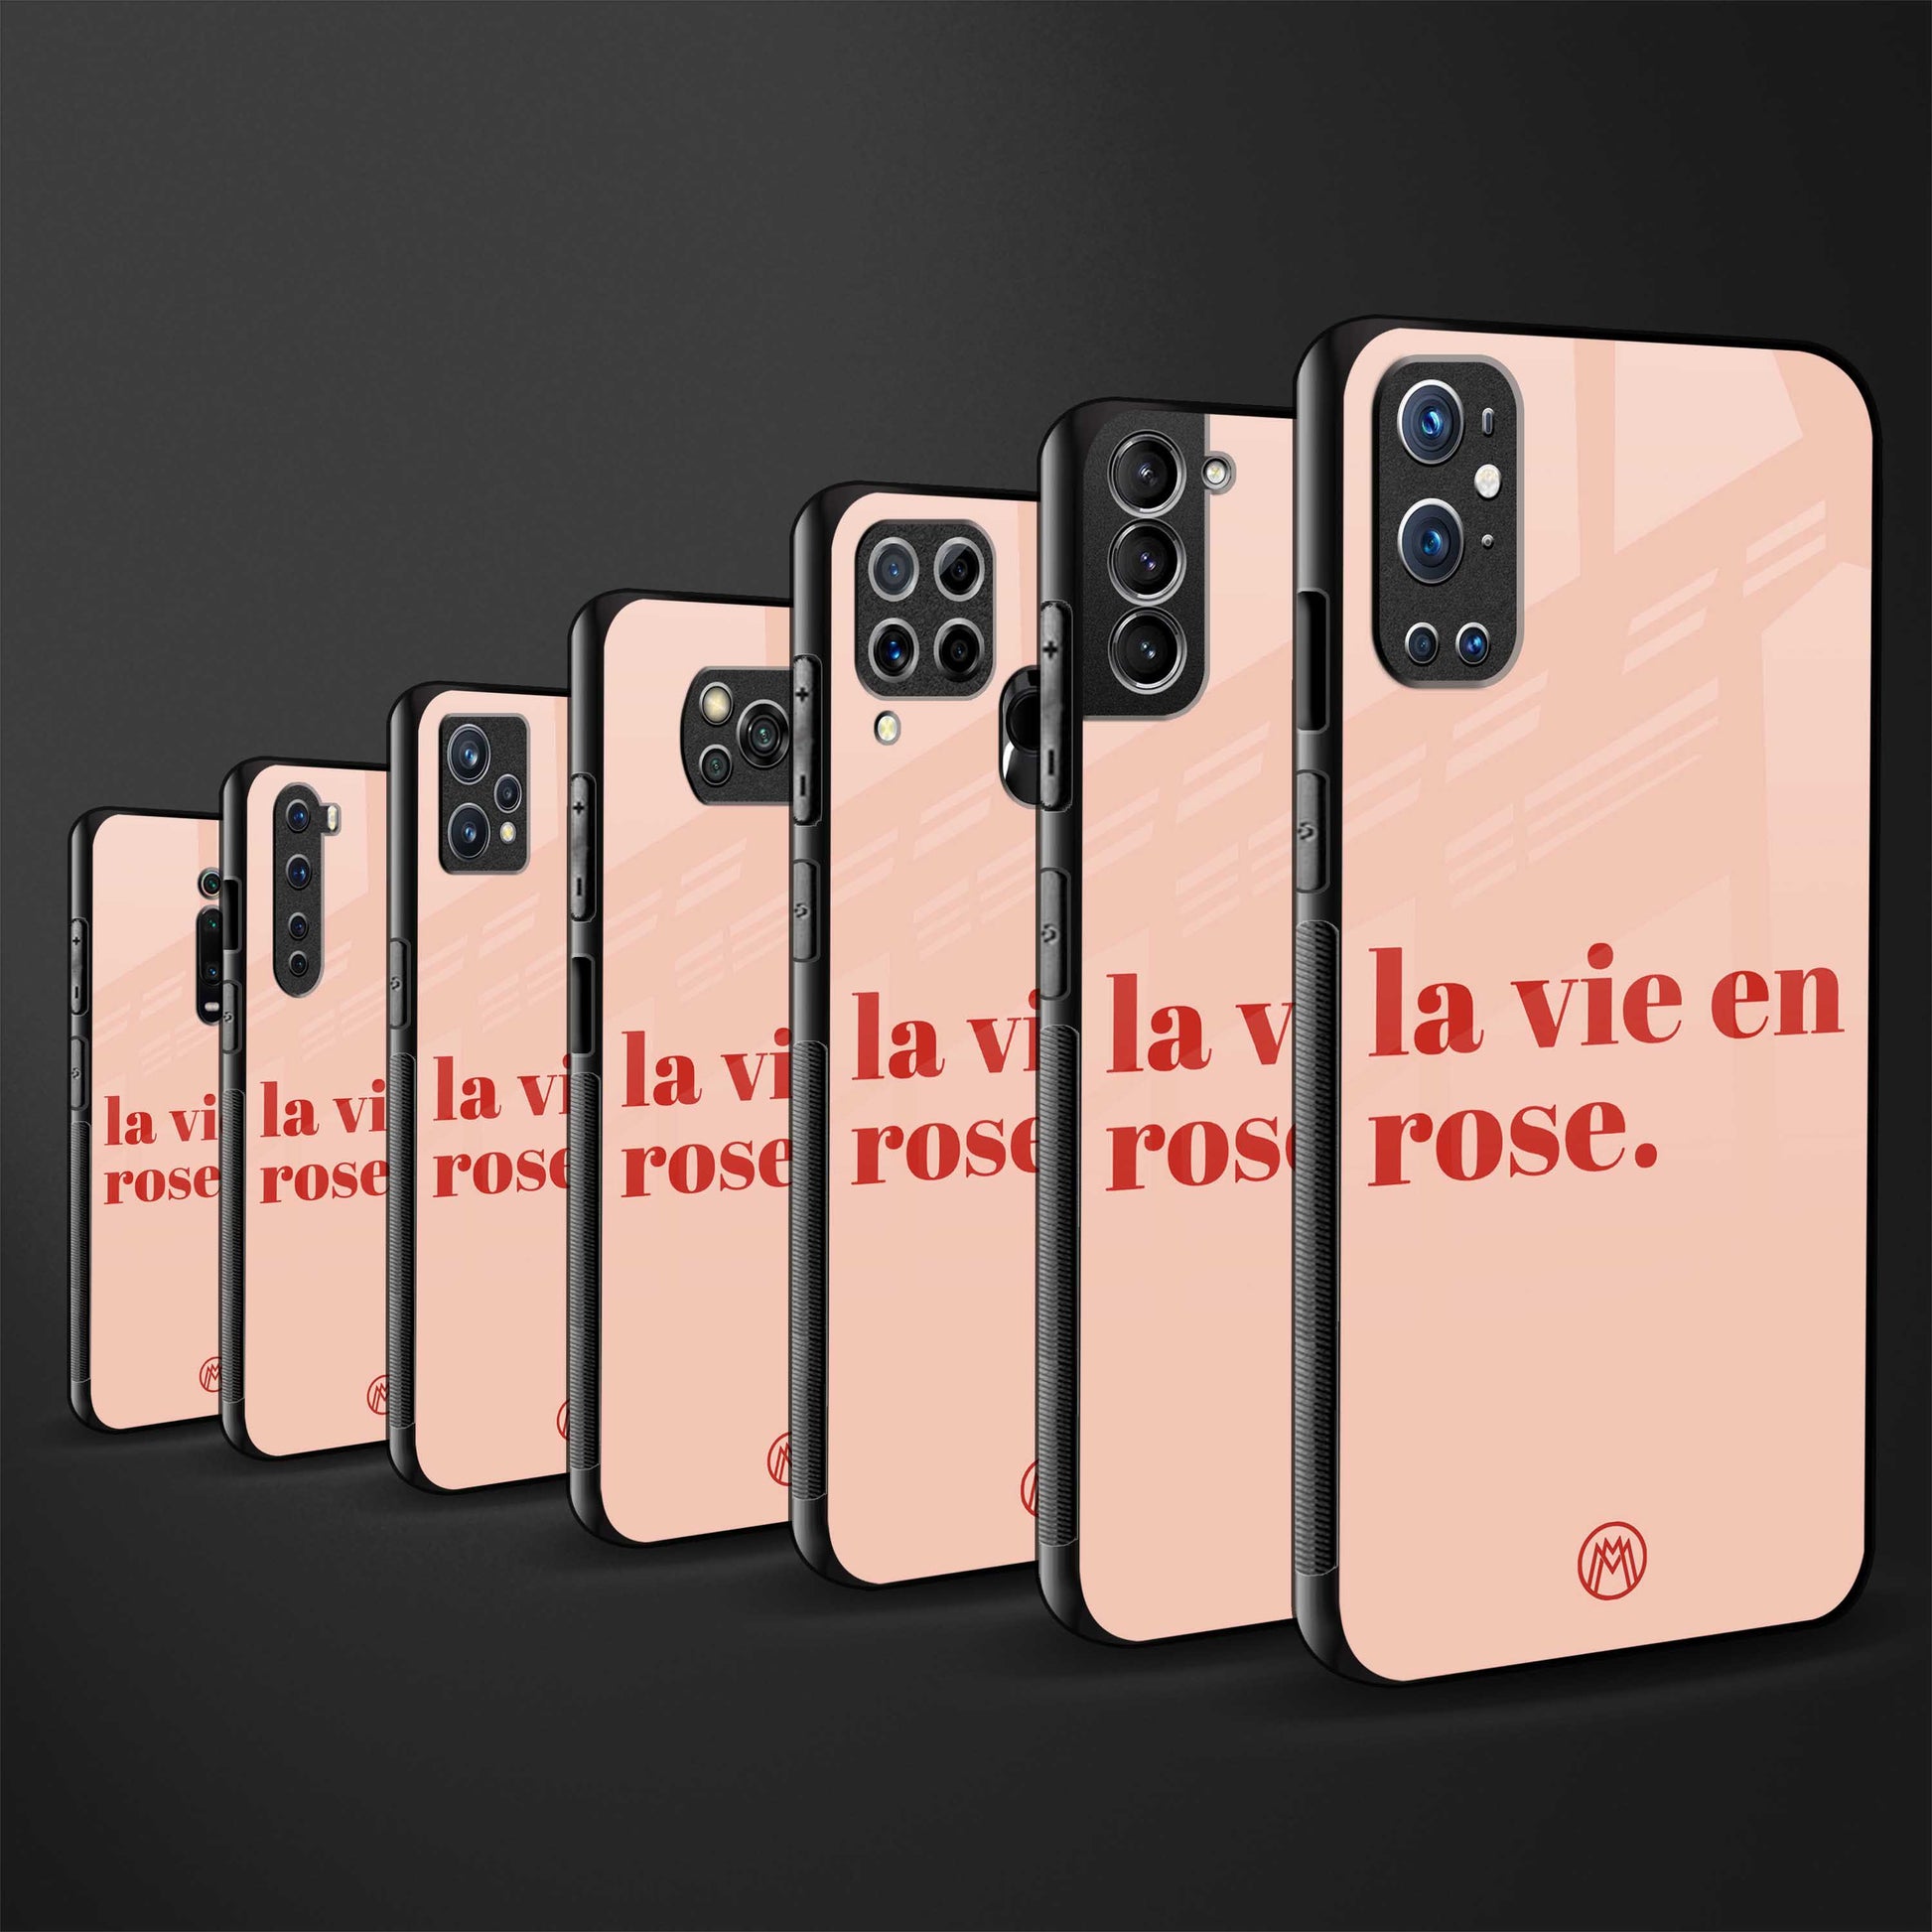 la vie en rose quote glass case for iphone 12 pro max image-3